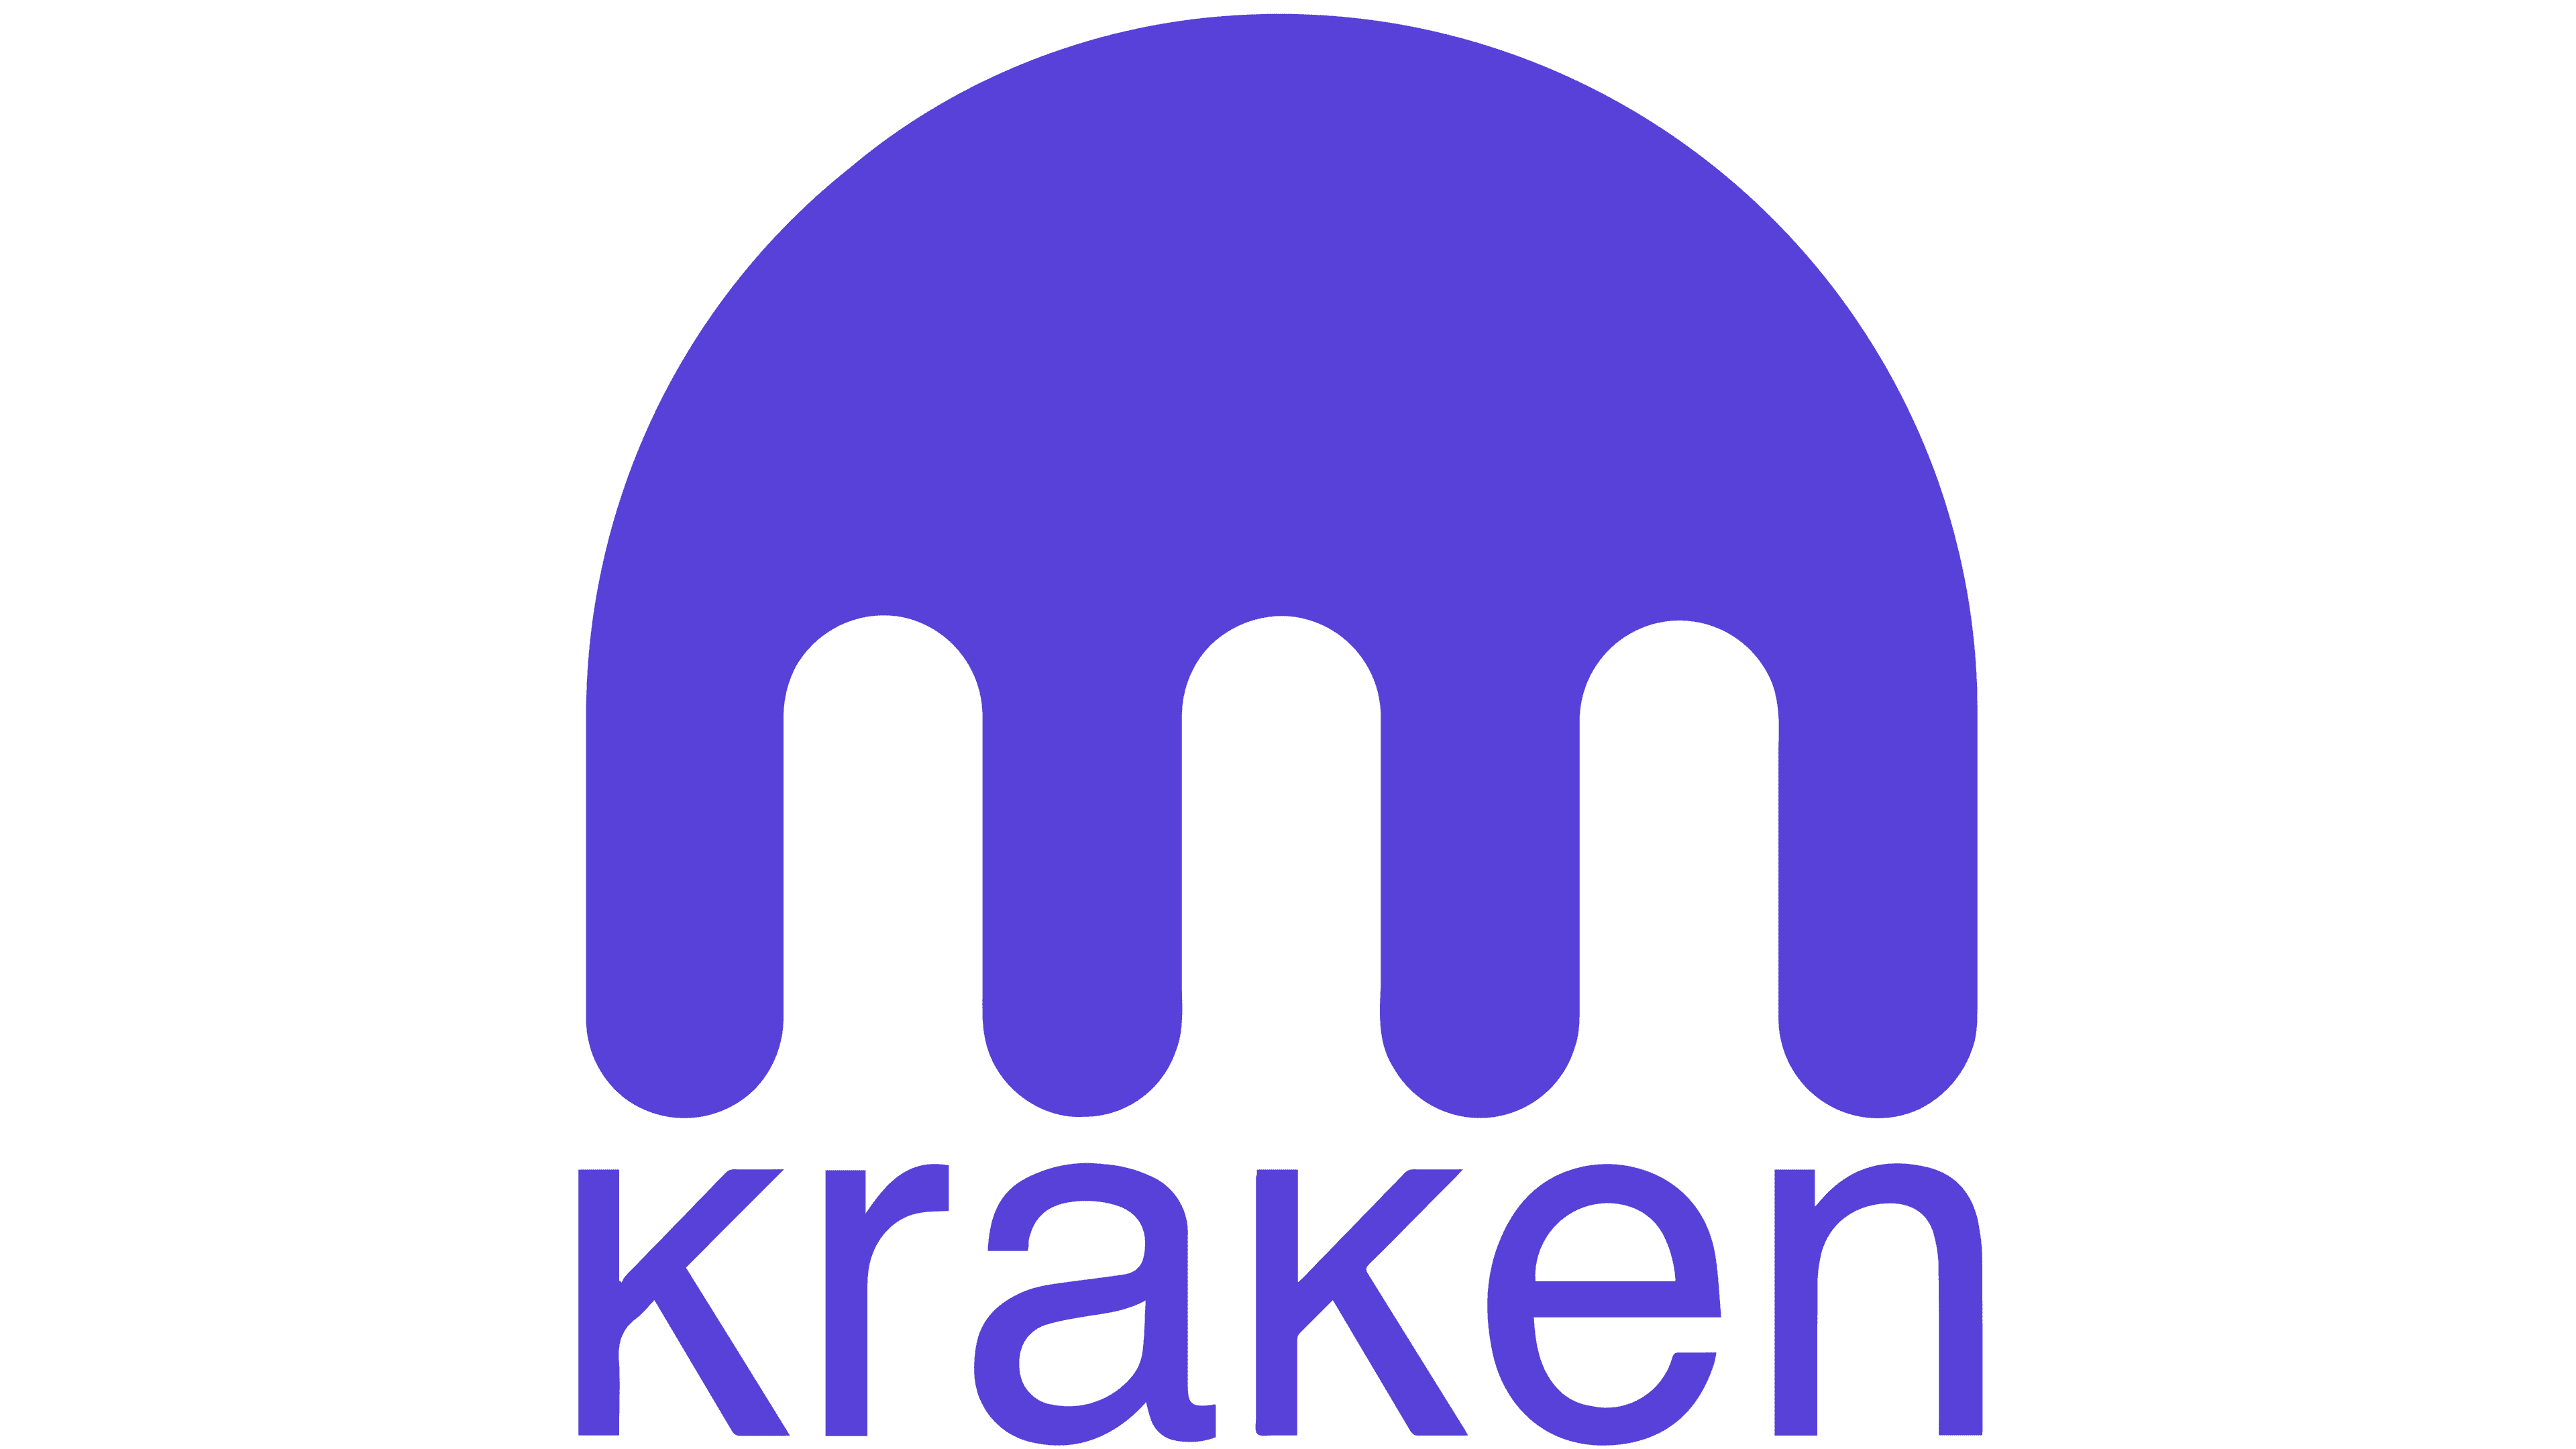 kraken lightning network node channel royalty finance